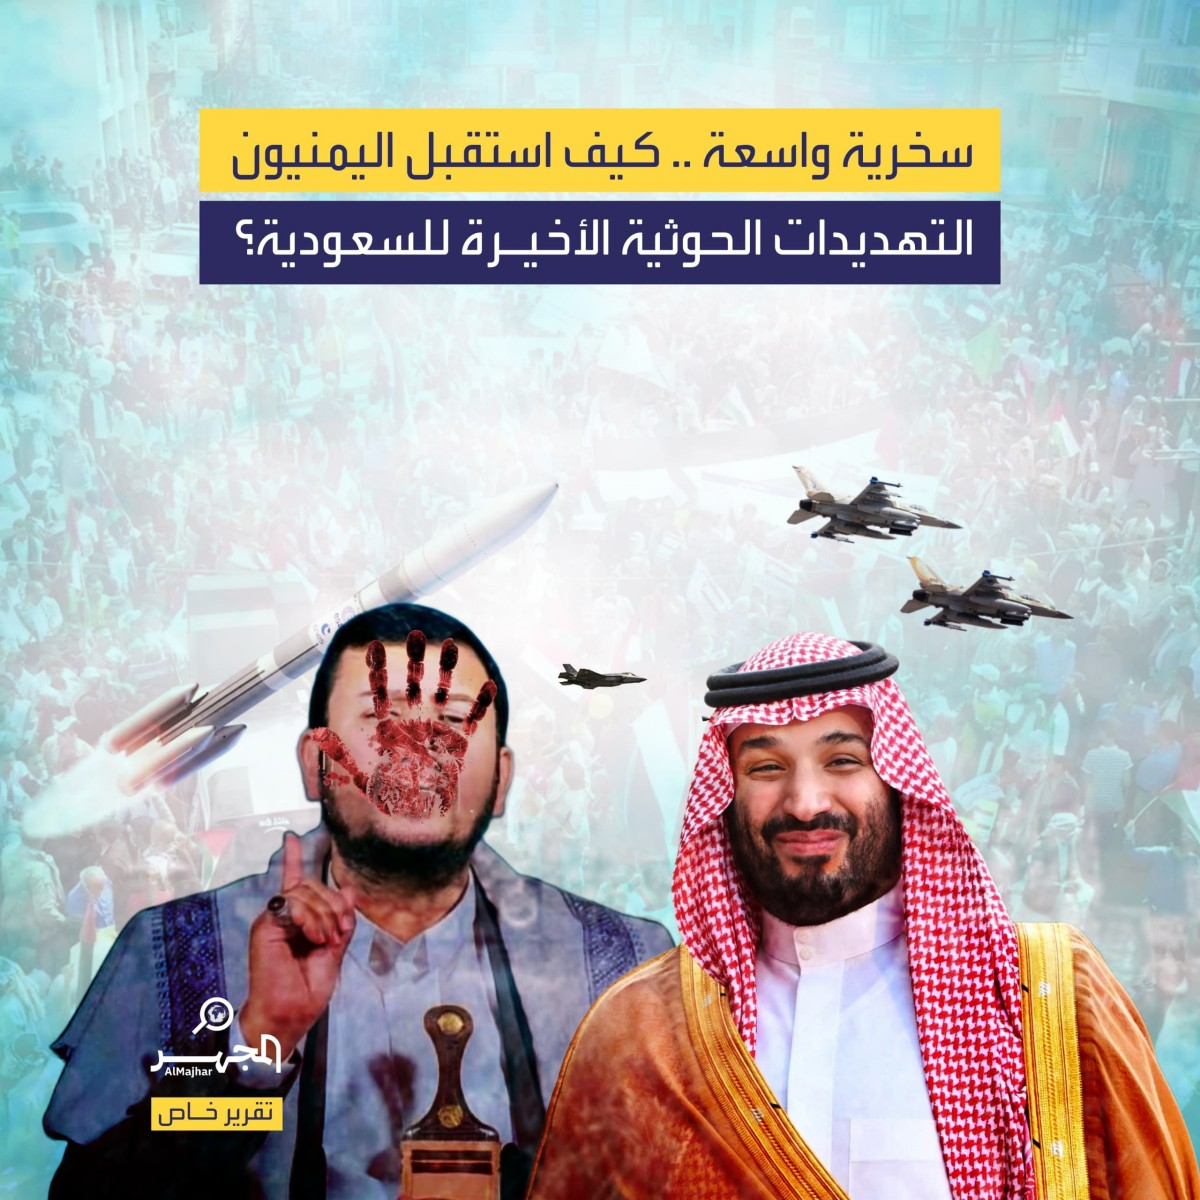 سخرية واسعة .. كيف استقبل اليمنيون التهديدات الحوثية الأخيرة للسعودية؟ (تقرير خاص)